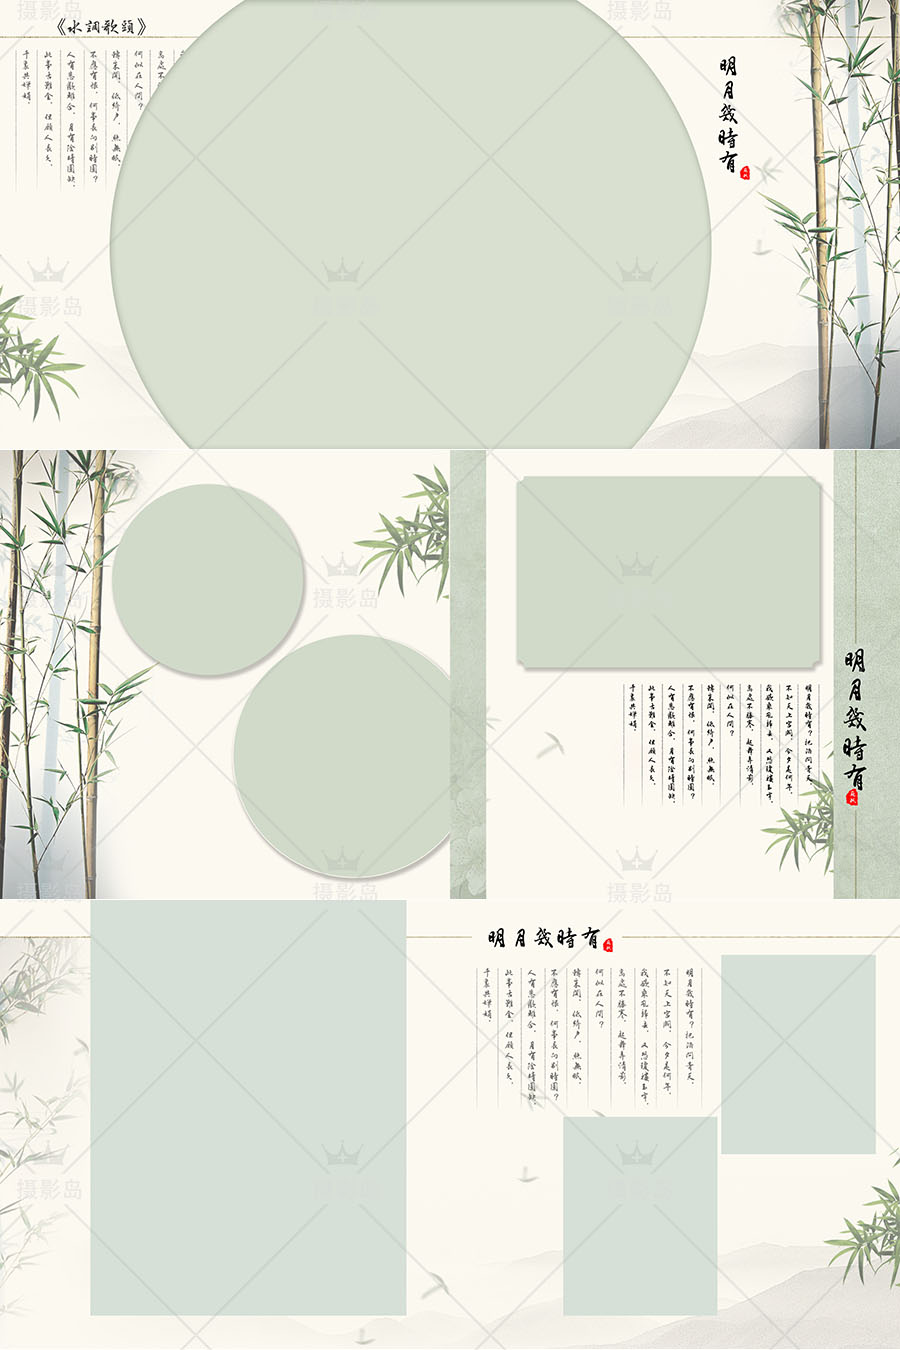 古典中国风主题摄影相册排版素材，盘子古装写真PSD相册模板